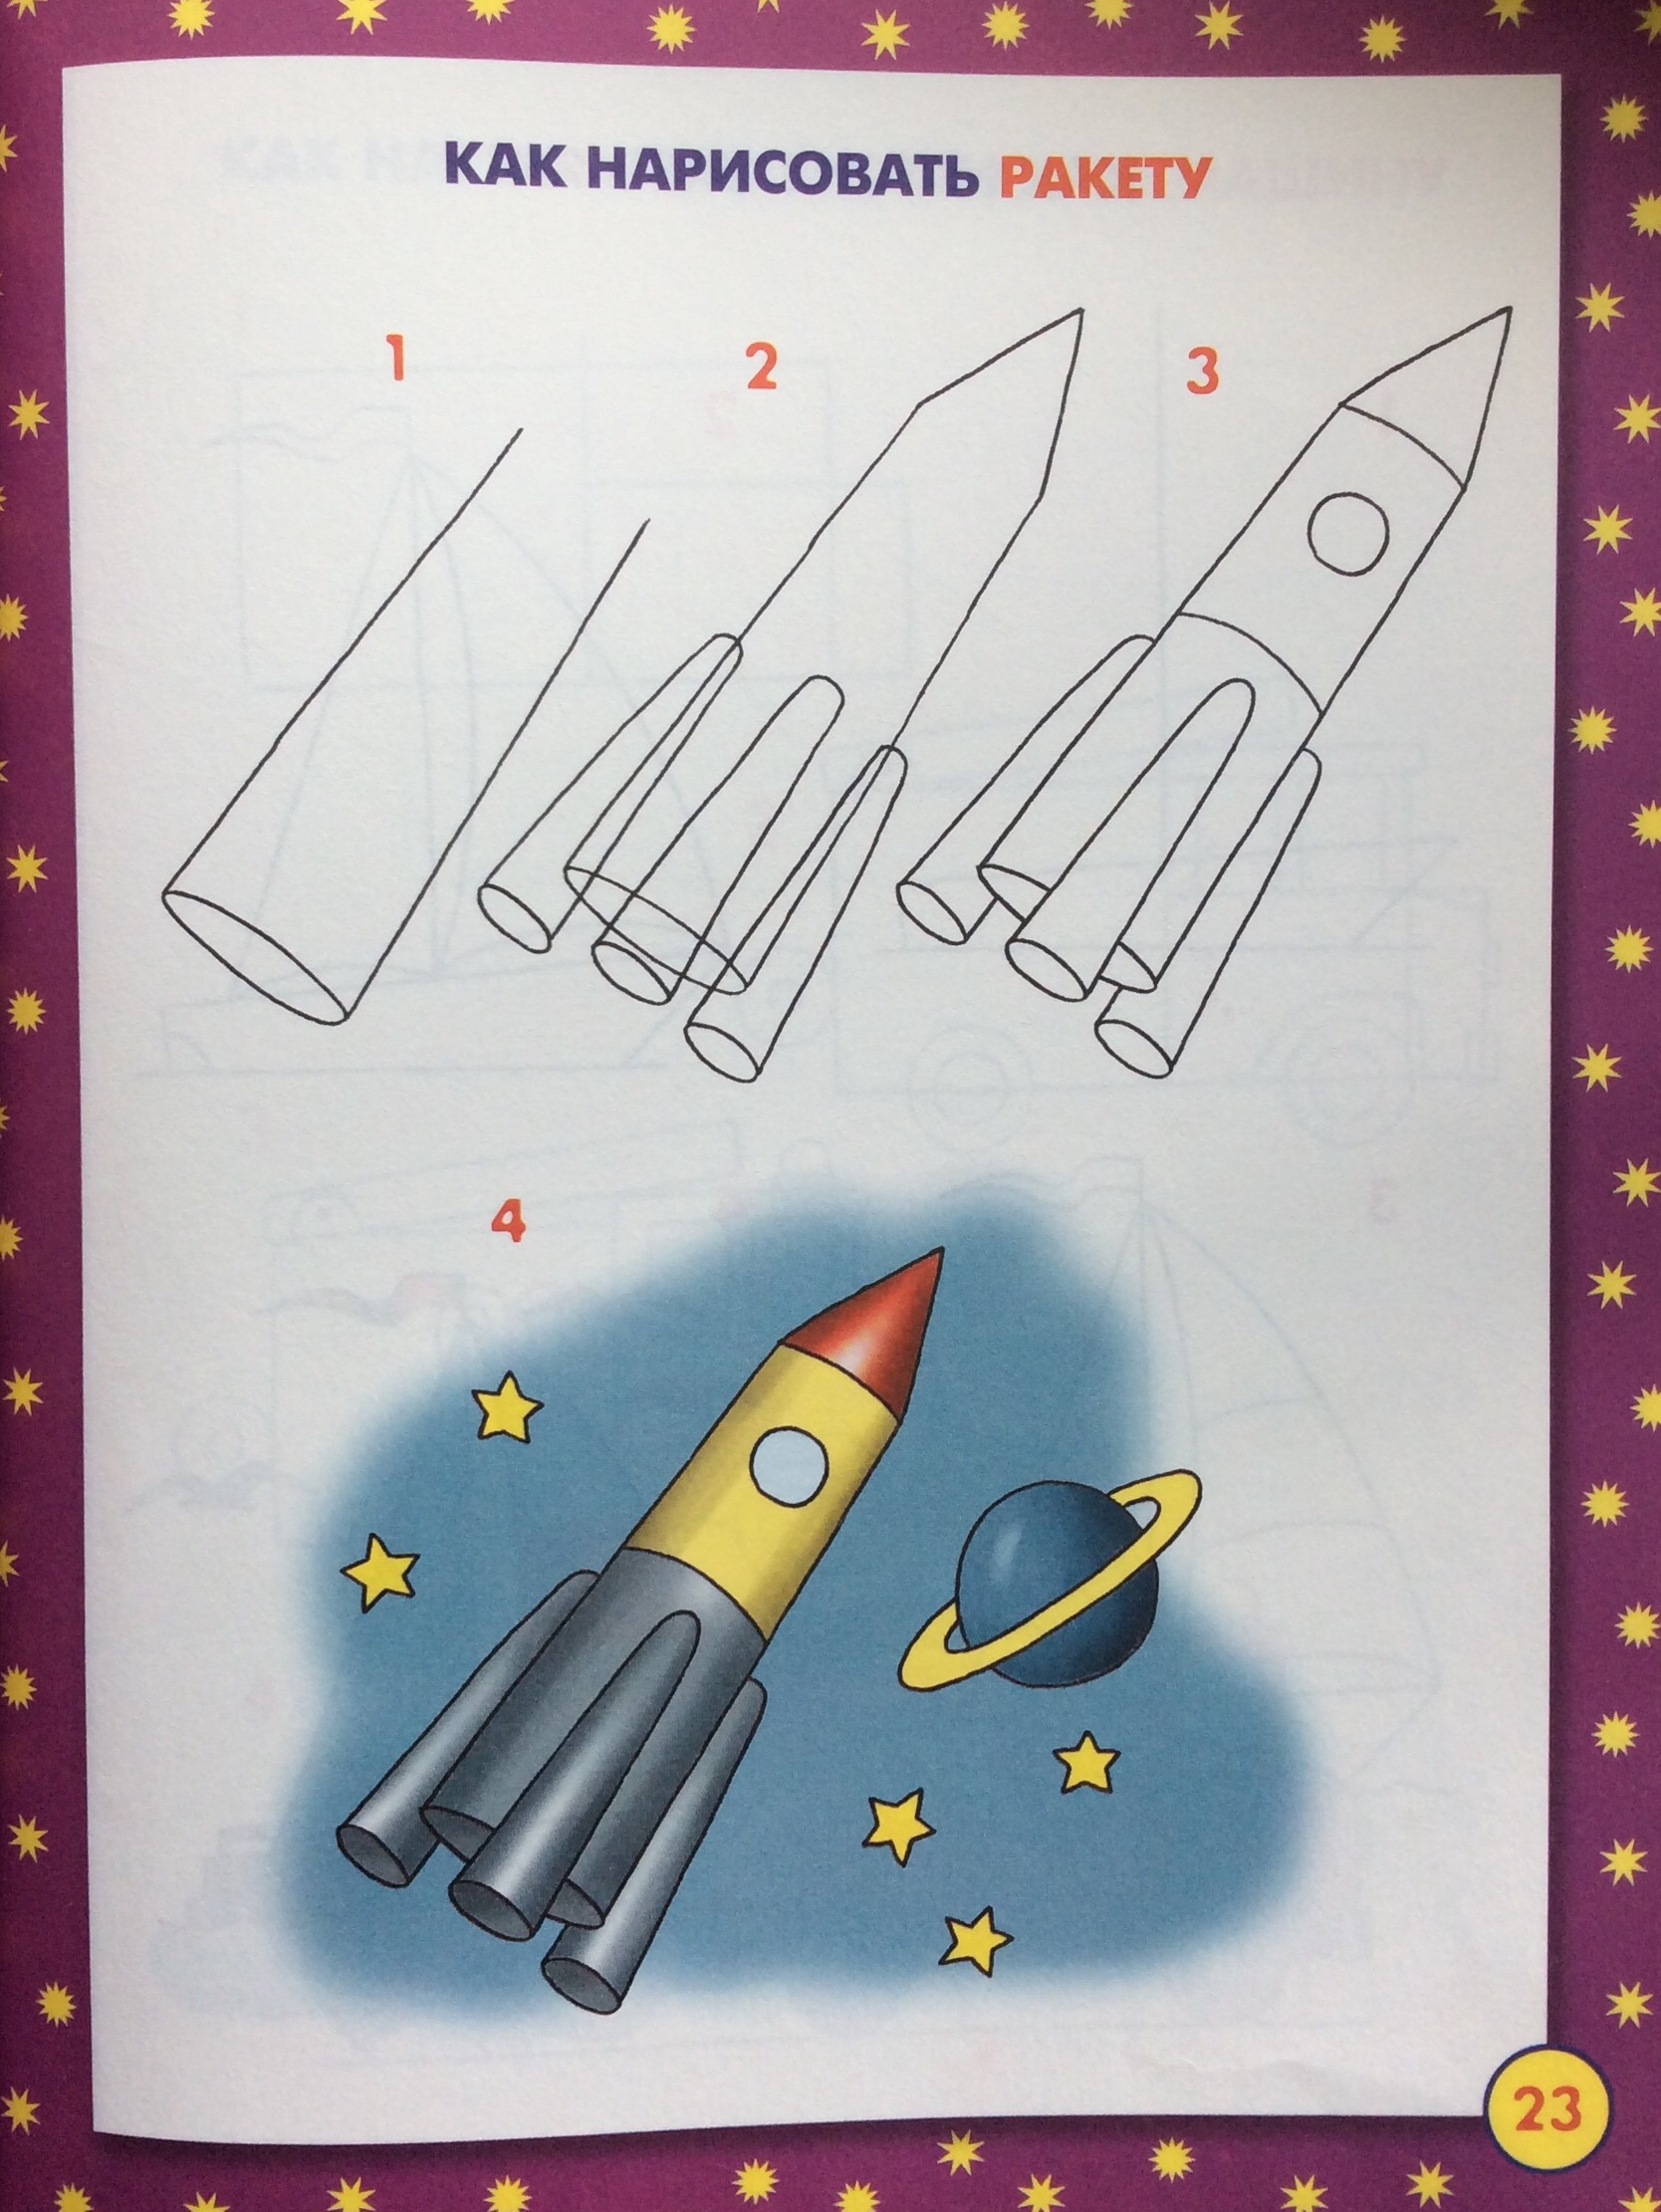 Ракета срисовать. Ракета рисунок. Как нарисовать ракету поэтапно. Ракета для рисования для детей. Ракета рисунок для детей.